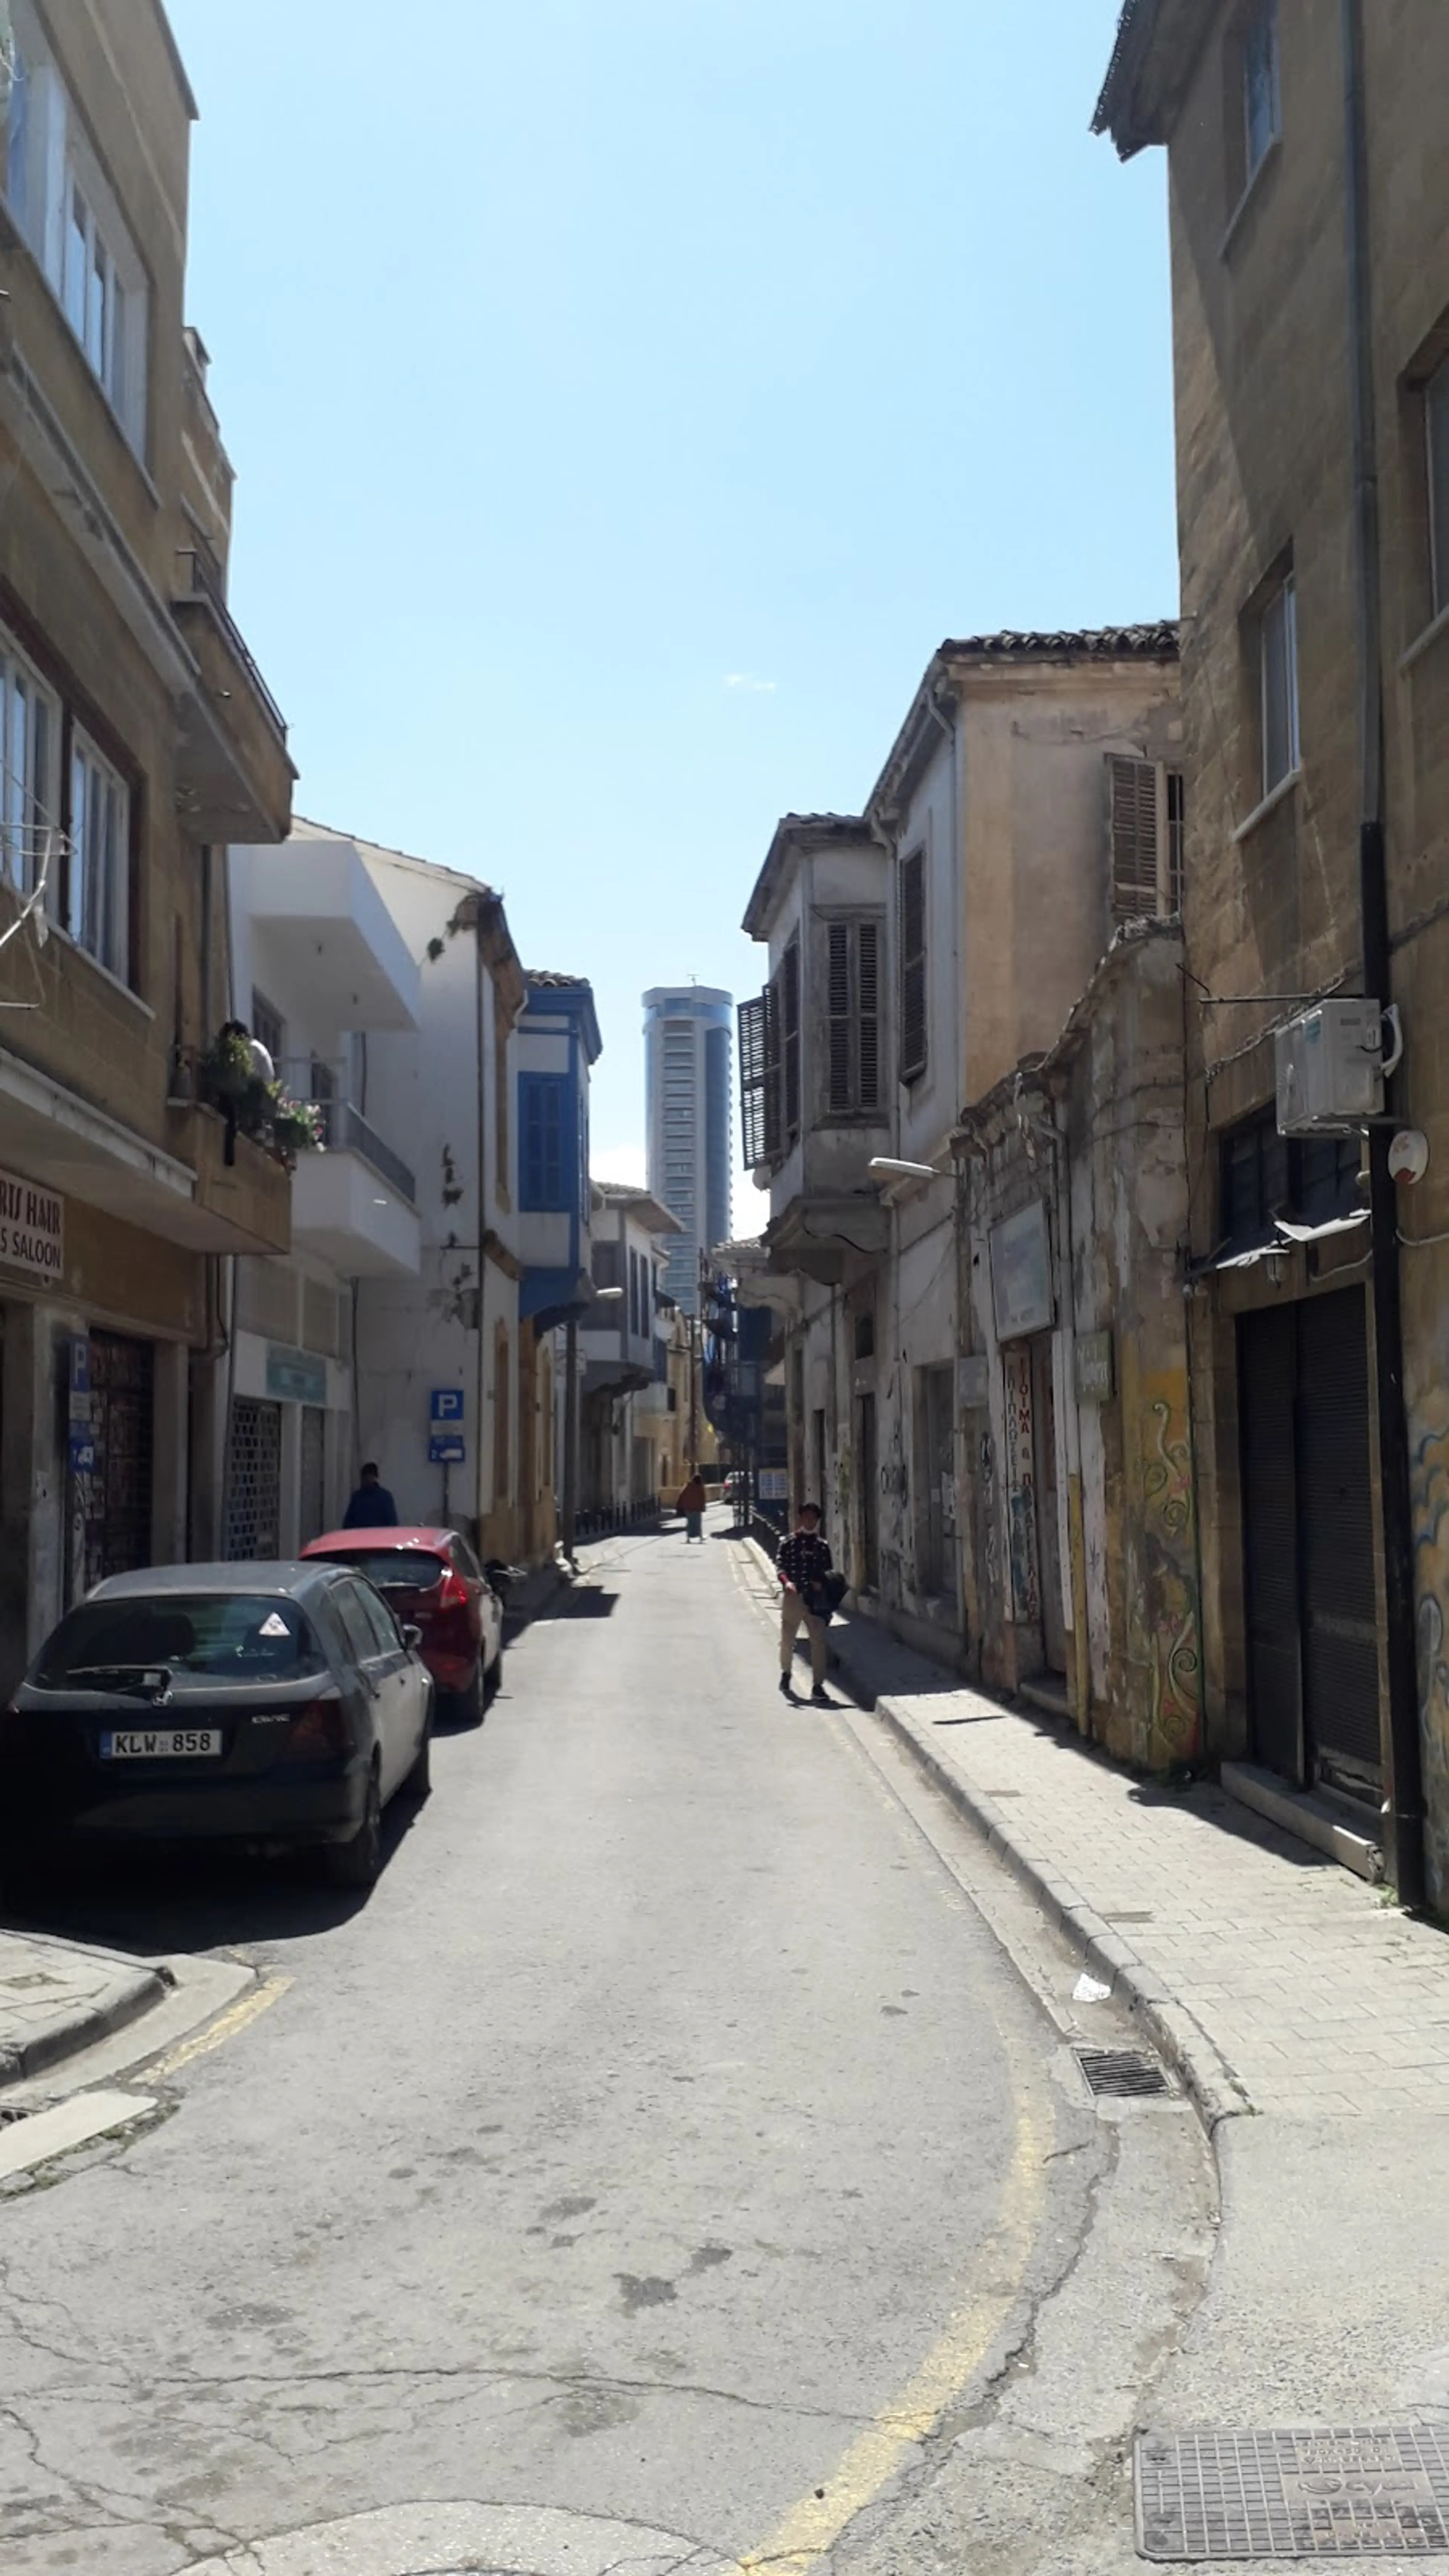 Nicosia's old town